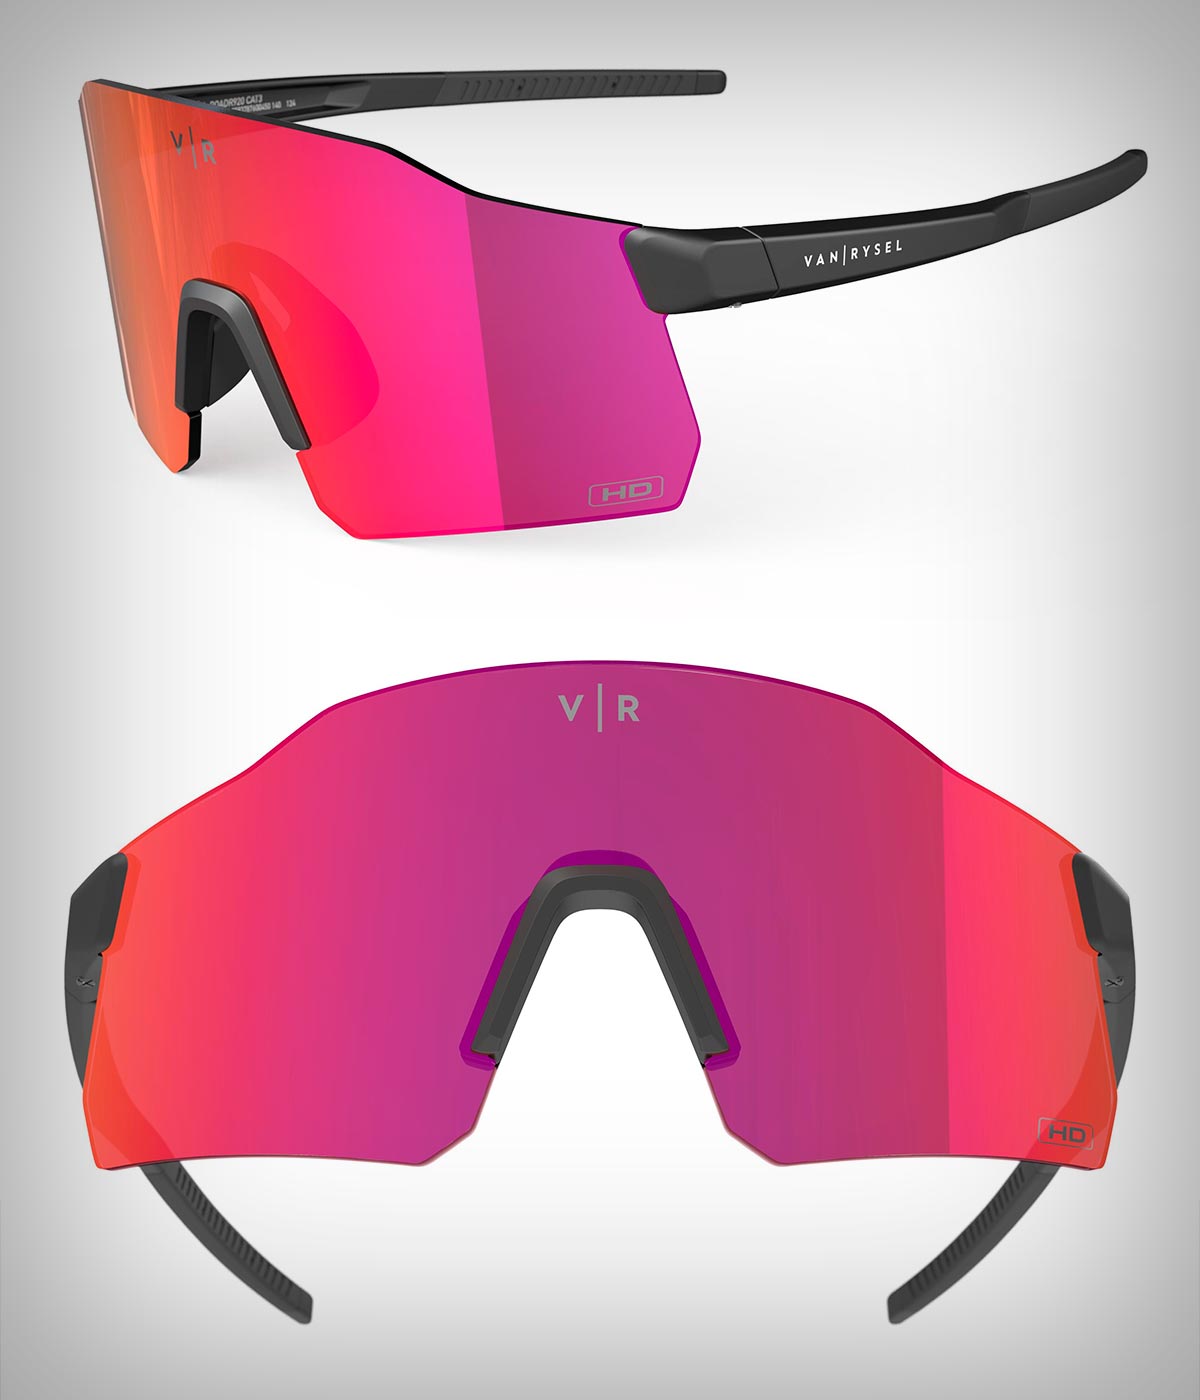 Van Rysel Roadr 920, unas gafas ultraligeras de diseño envolvente sin montura a precio sin igual